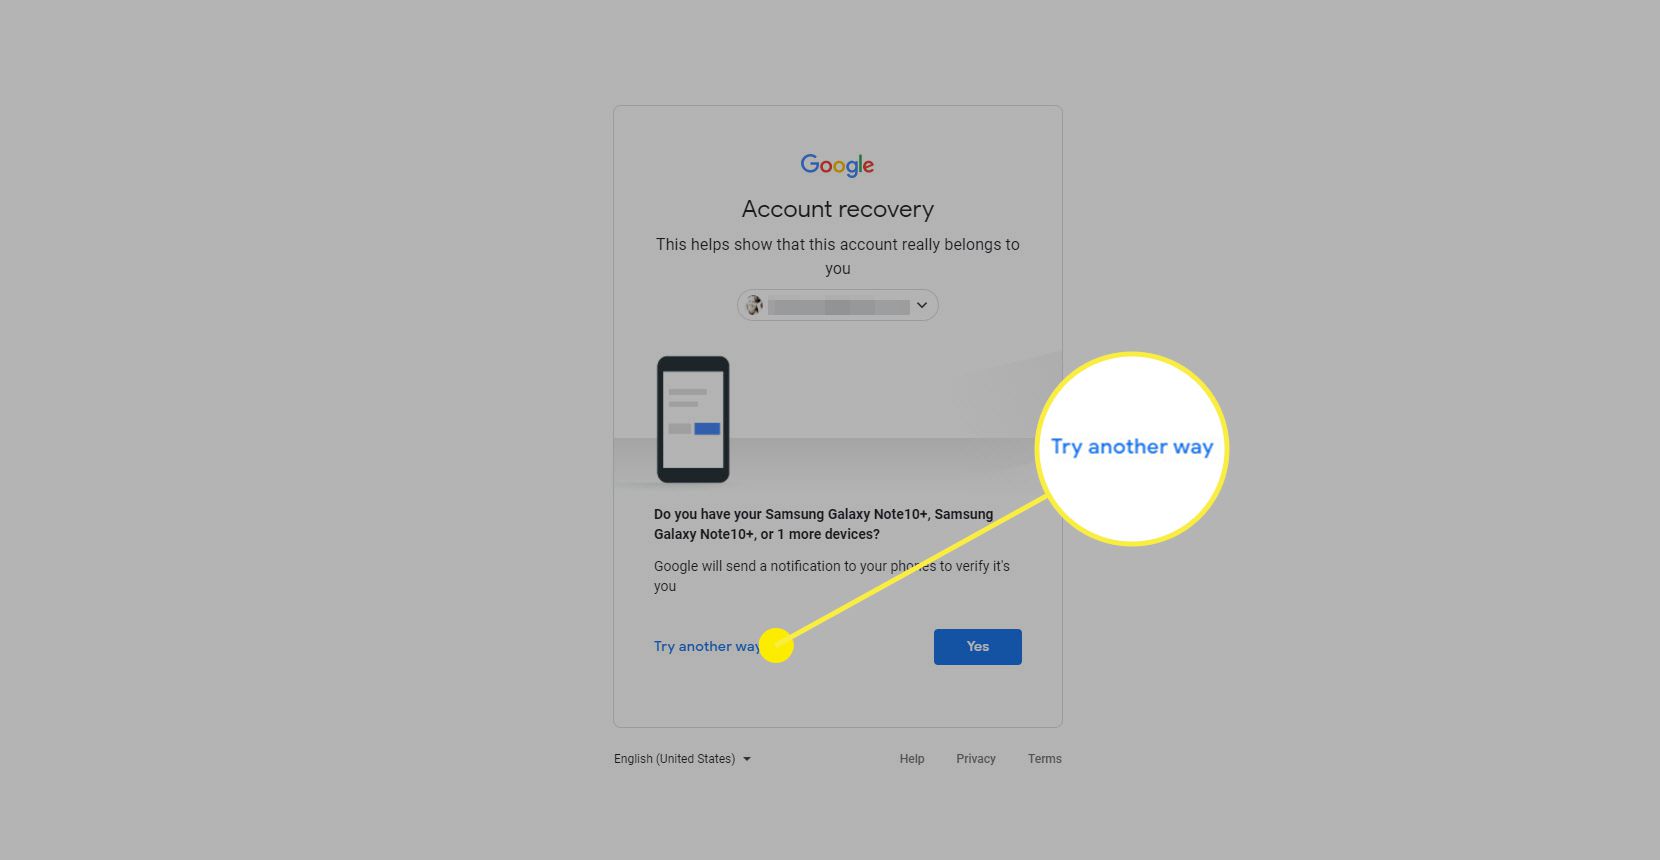 Skärmdump av återställningssidan för Google-konto med fokus på Ange sista lösenordet och försök länkar på ett annat sätt